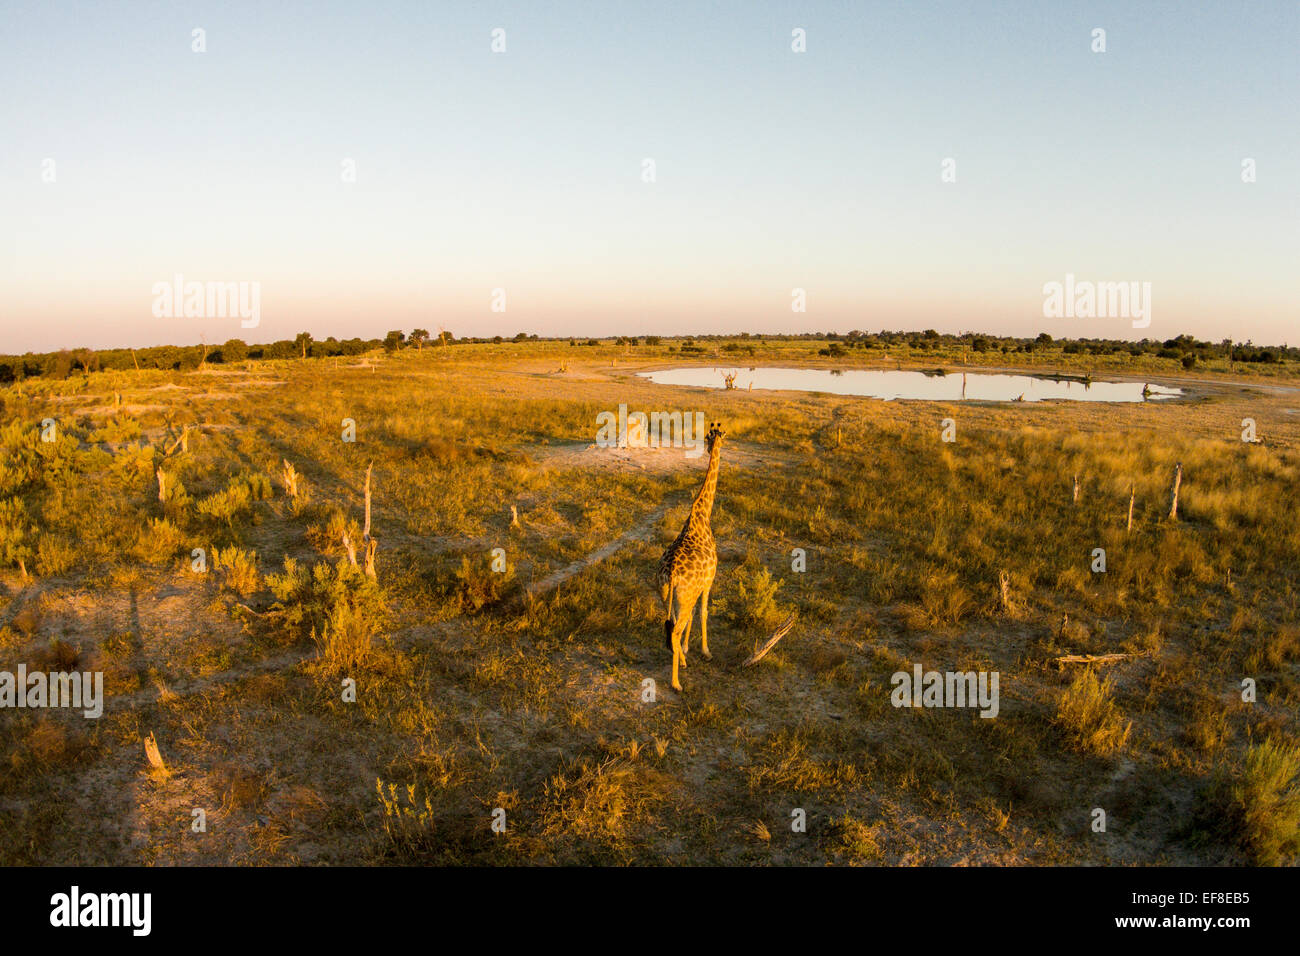 Africa, Botswana, Moremi Game Reserve, veduta aerea della giraffa (Giraffa camelopardalis) camminando verso il foro per l'acqua di Okavango del Foto Stock